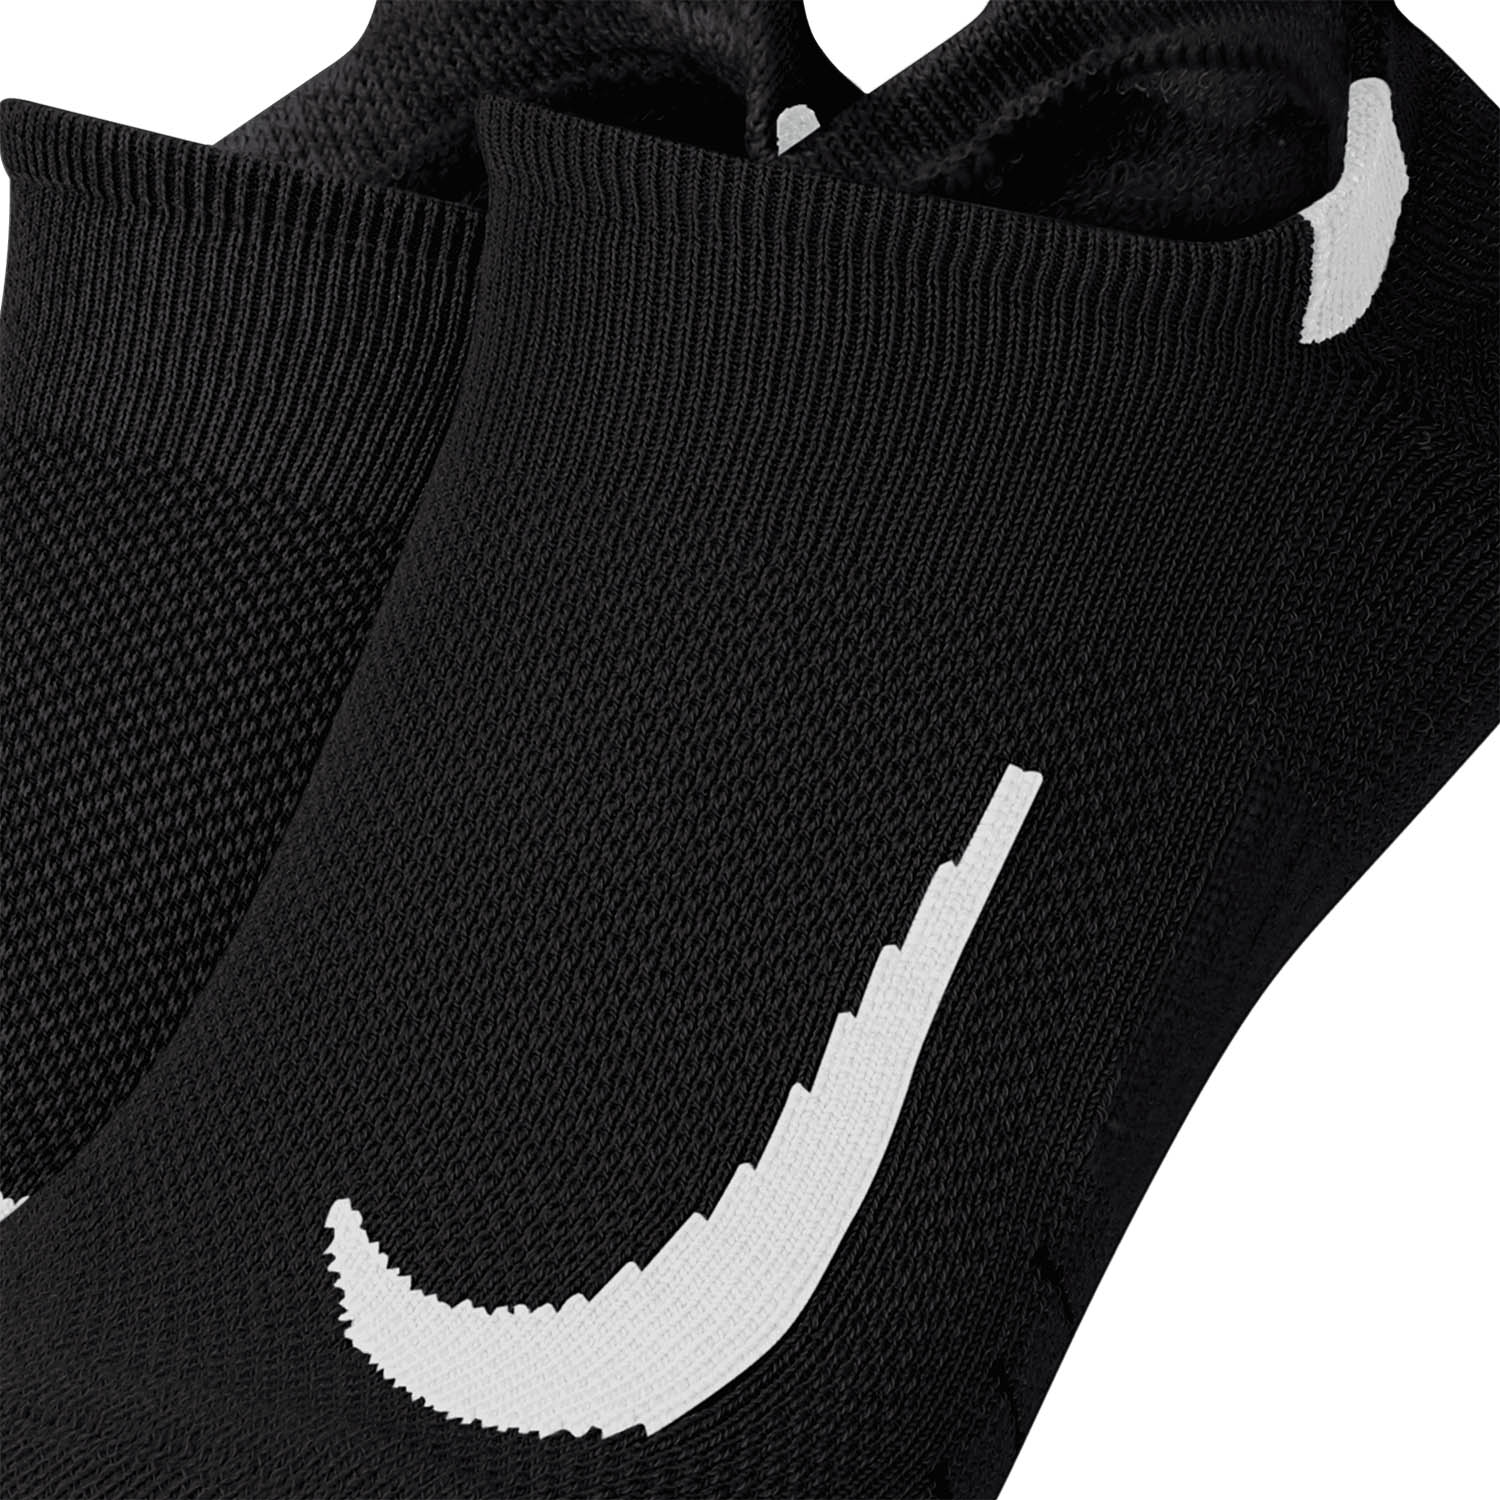 Nike Multiplier x 2 Calze - Black/White